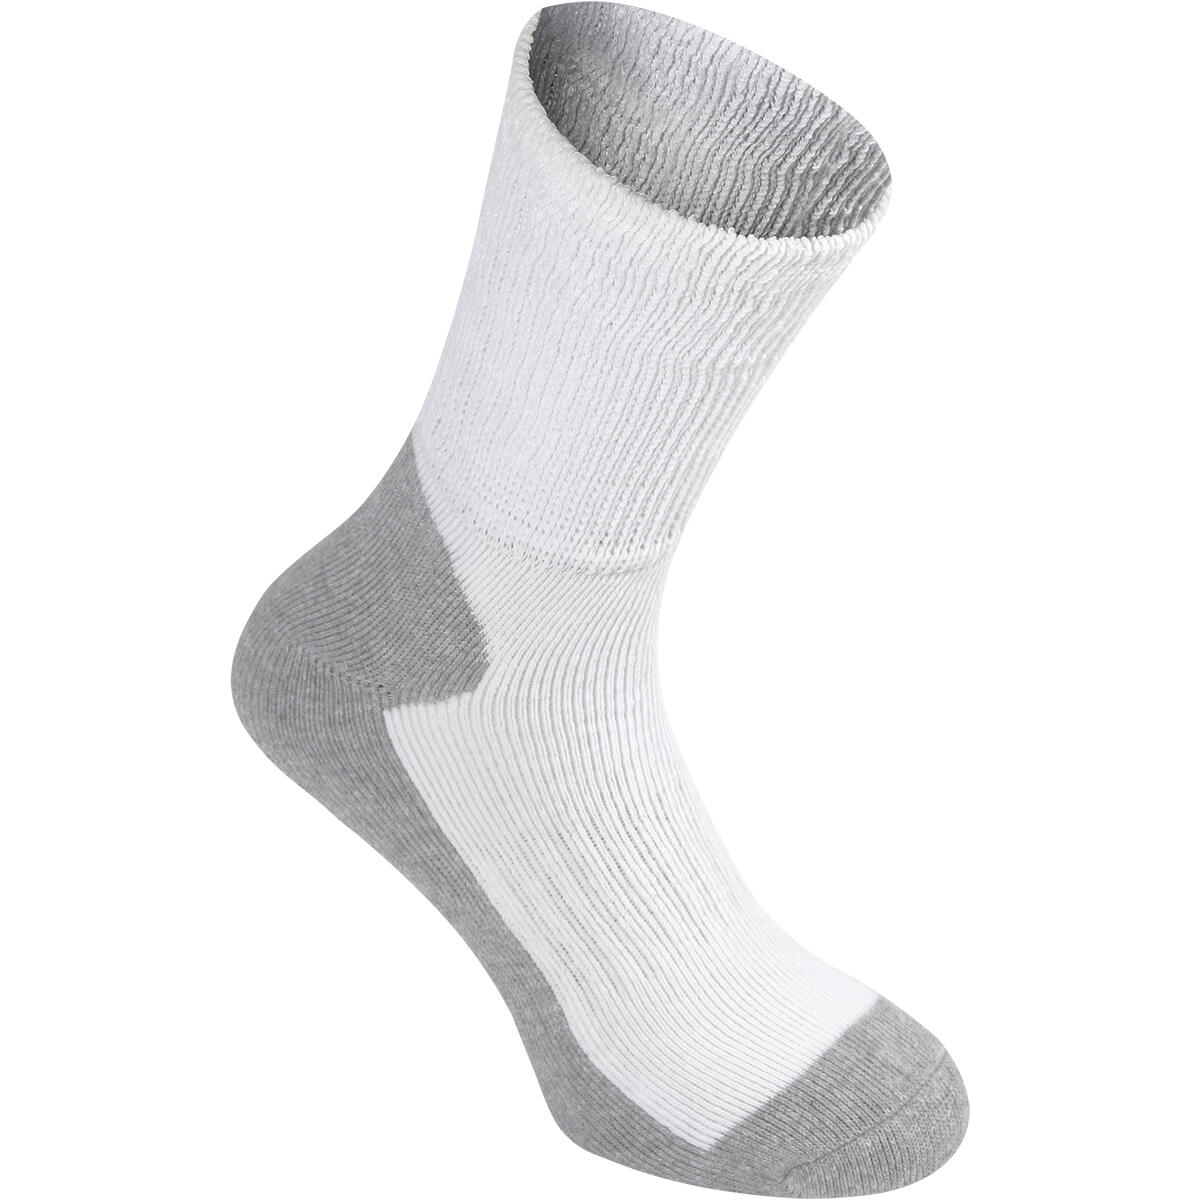 GRAY-NICOLLS Matrix Socks Jnr,White